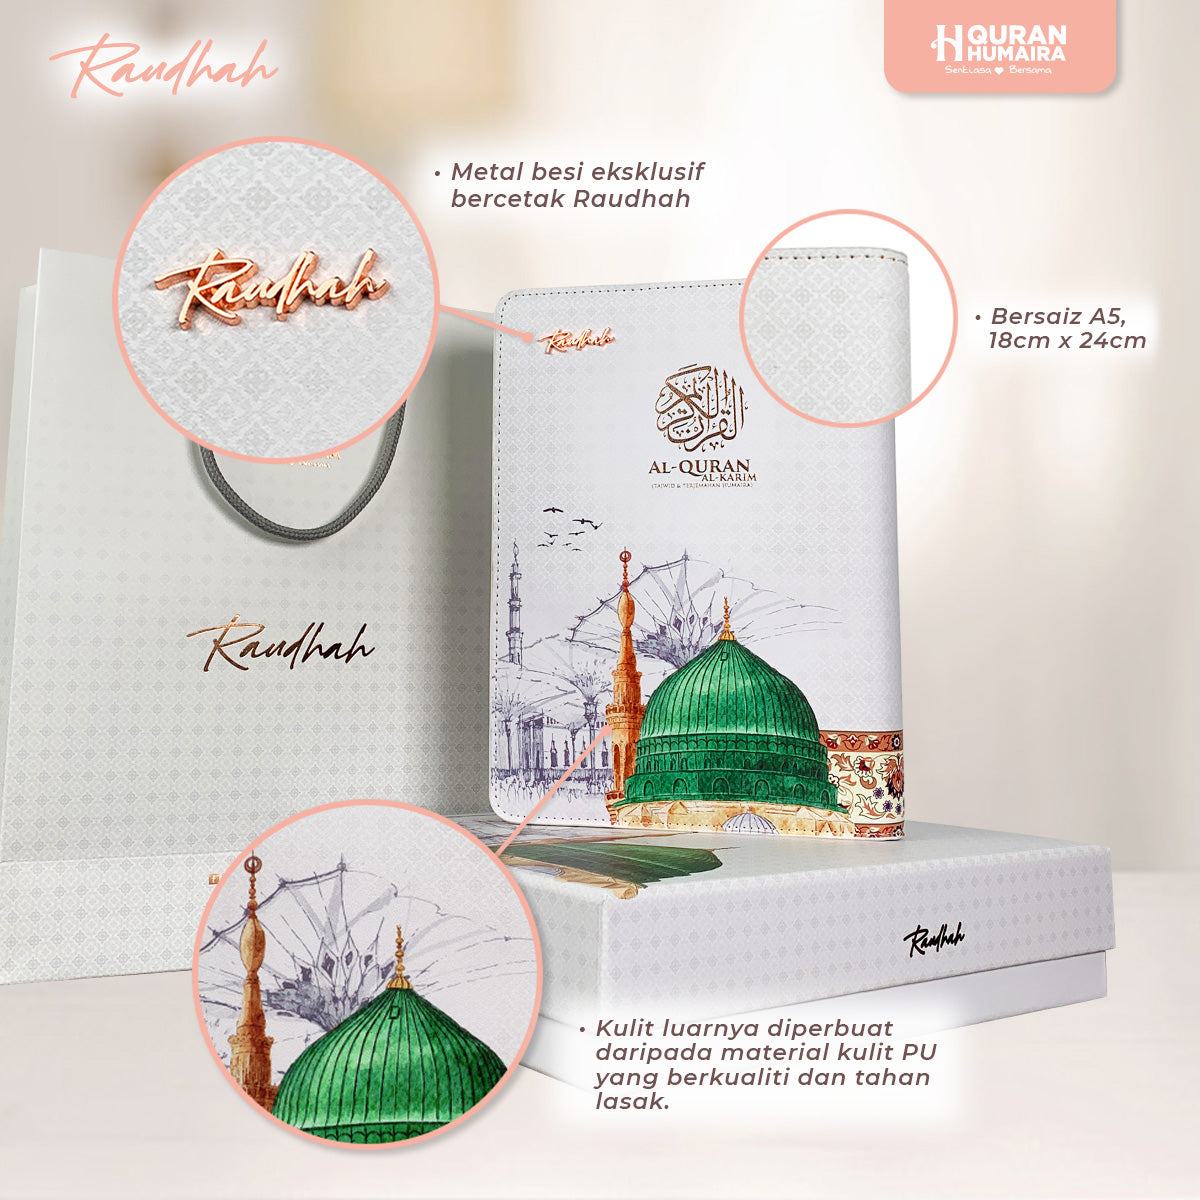 Al-Quran Humaira Tagging : Special Edition Raudhah